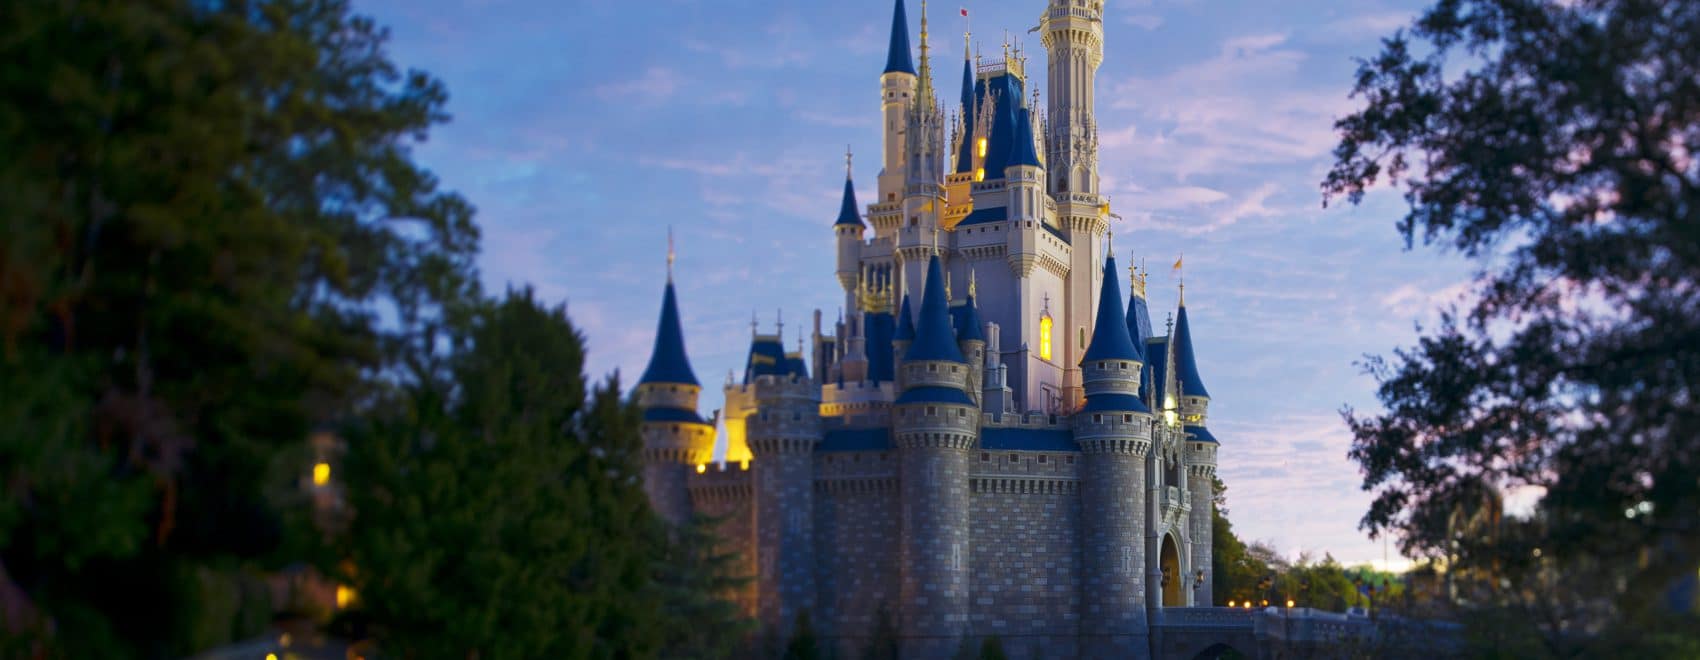 Walt Disney World's Castle